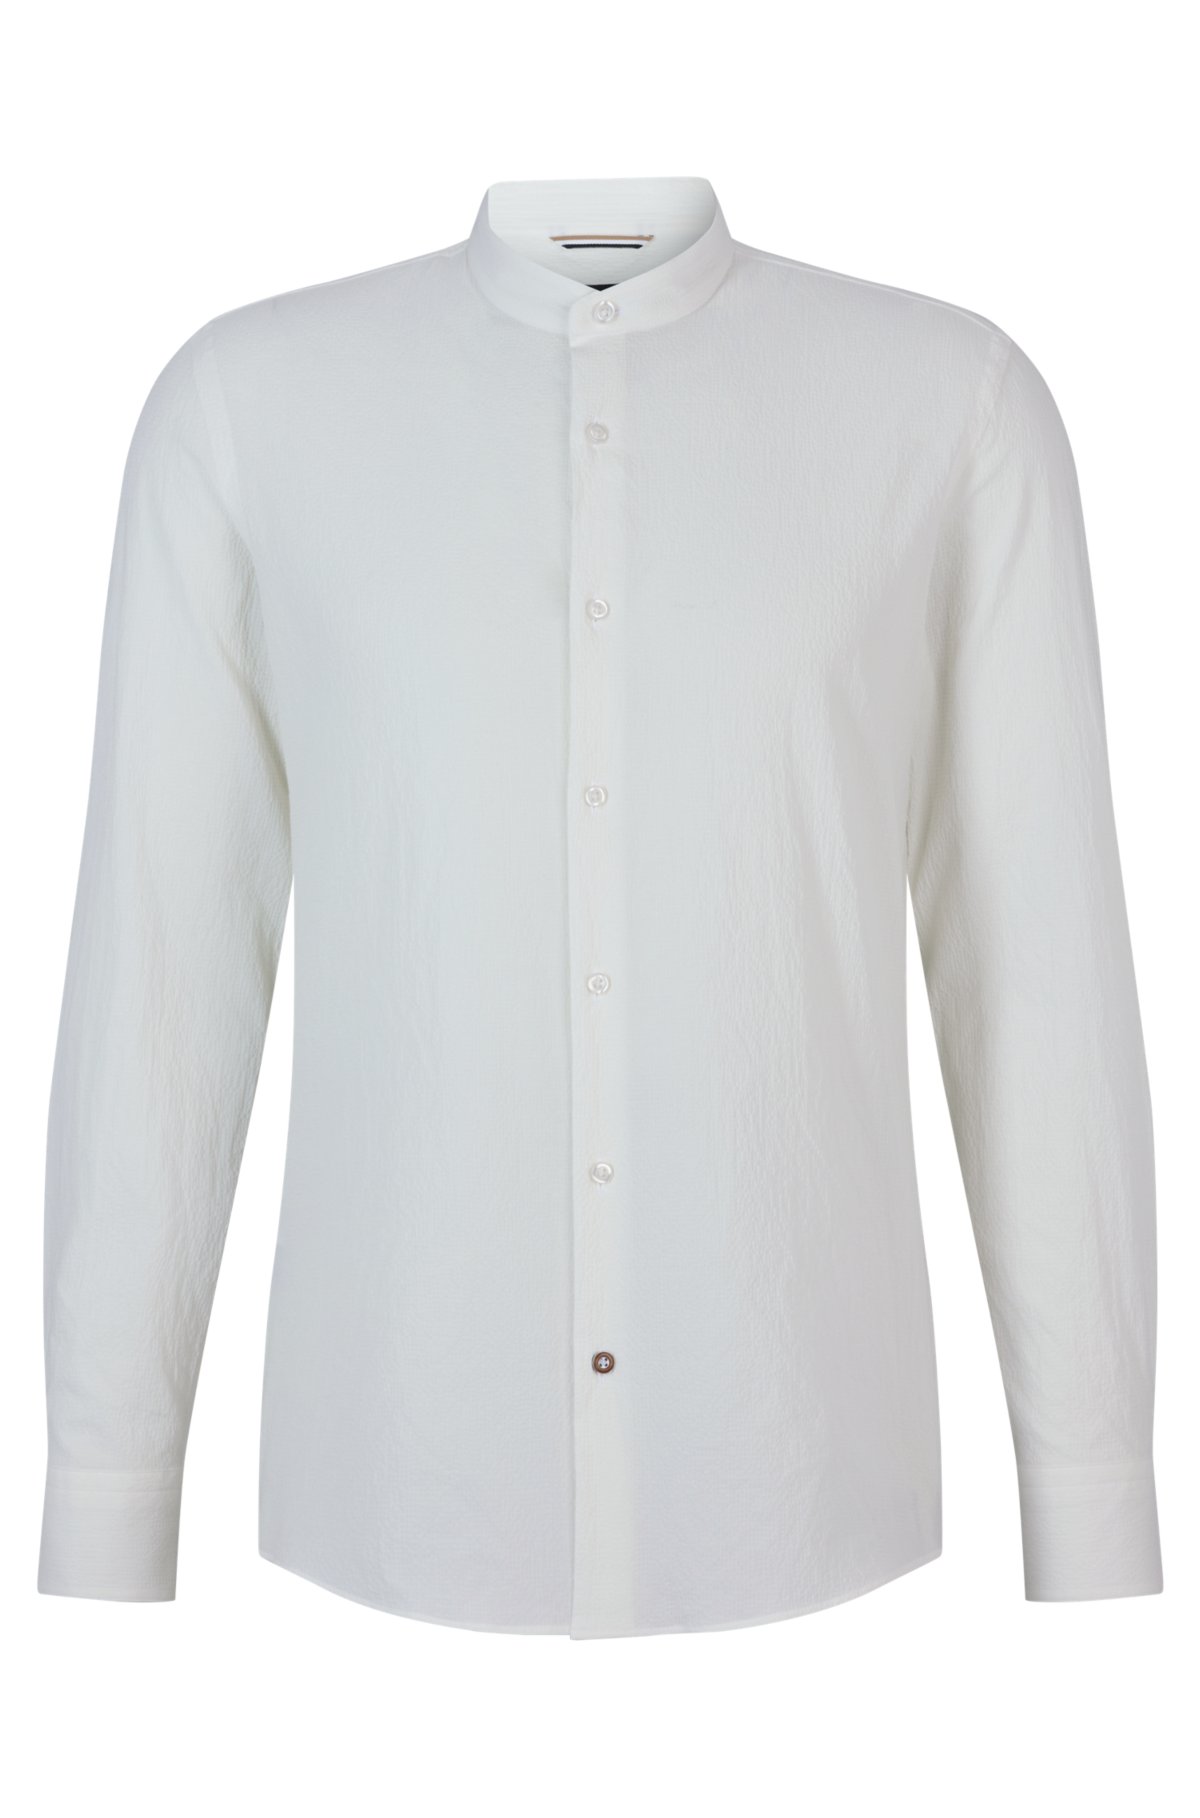 Shinkan Regulatie beweeglijkheid BOSS - Collarless slim-fit shirt in stretch-cotton seersucker